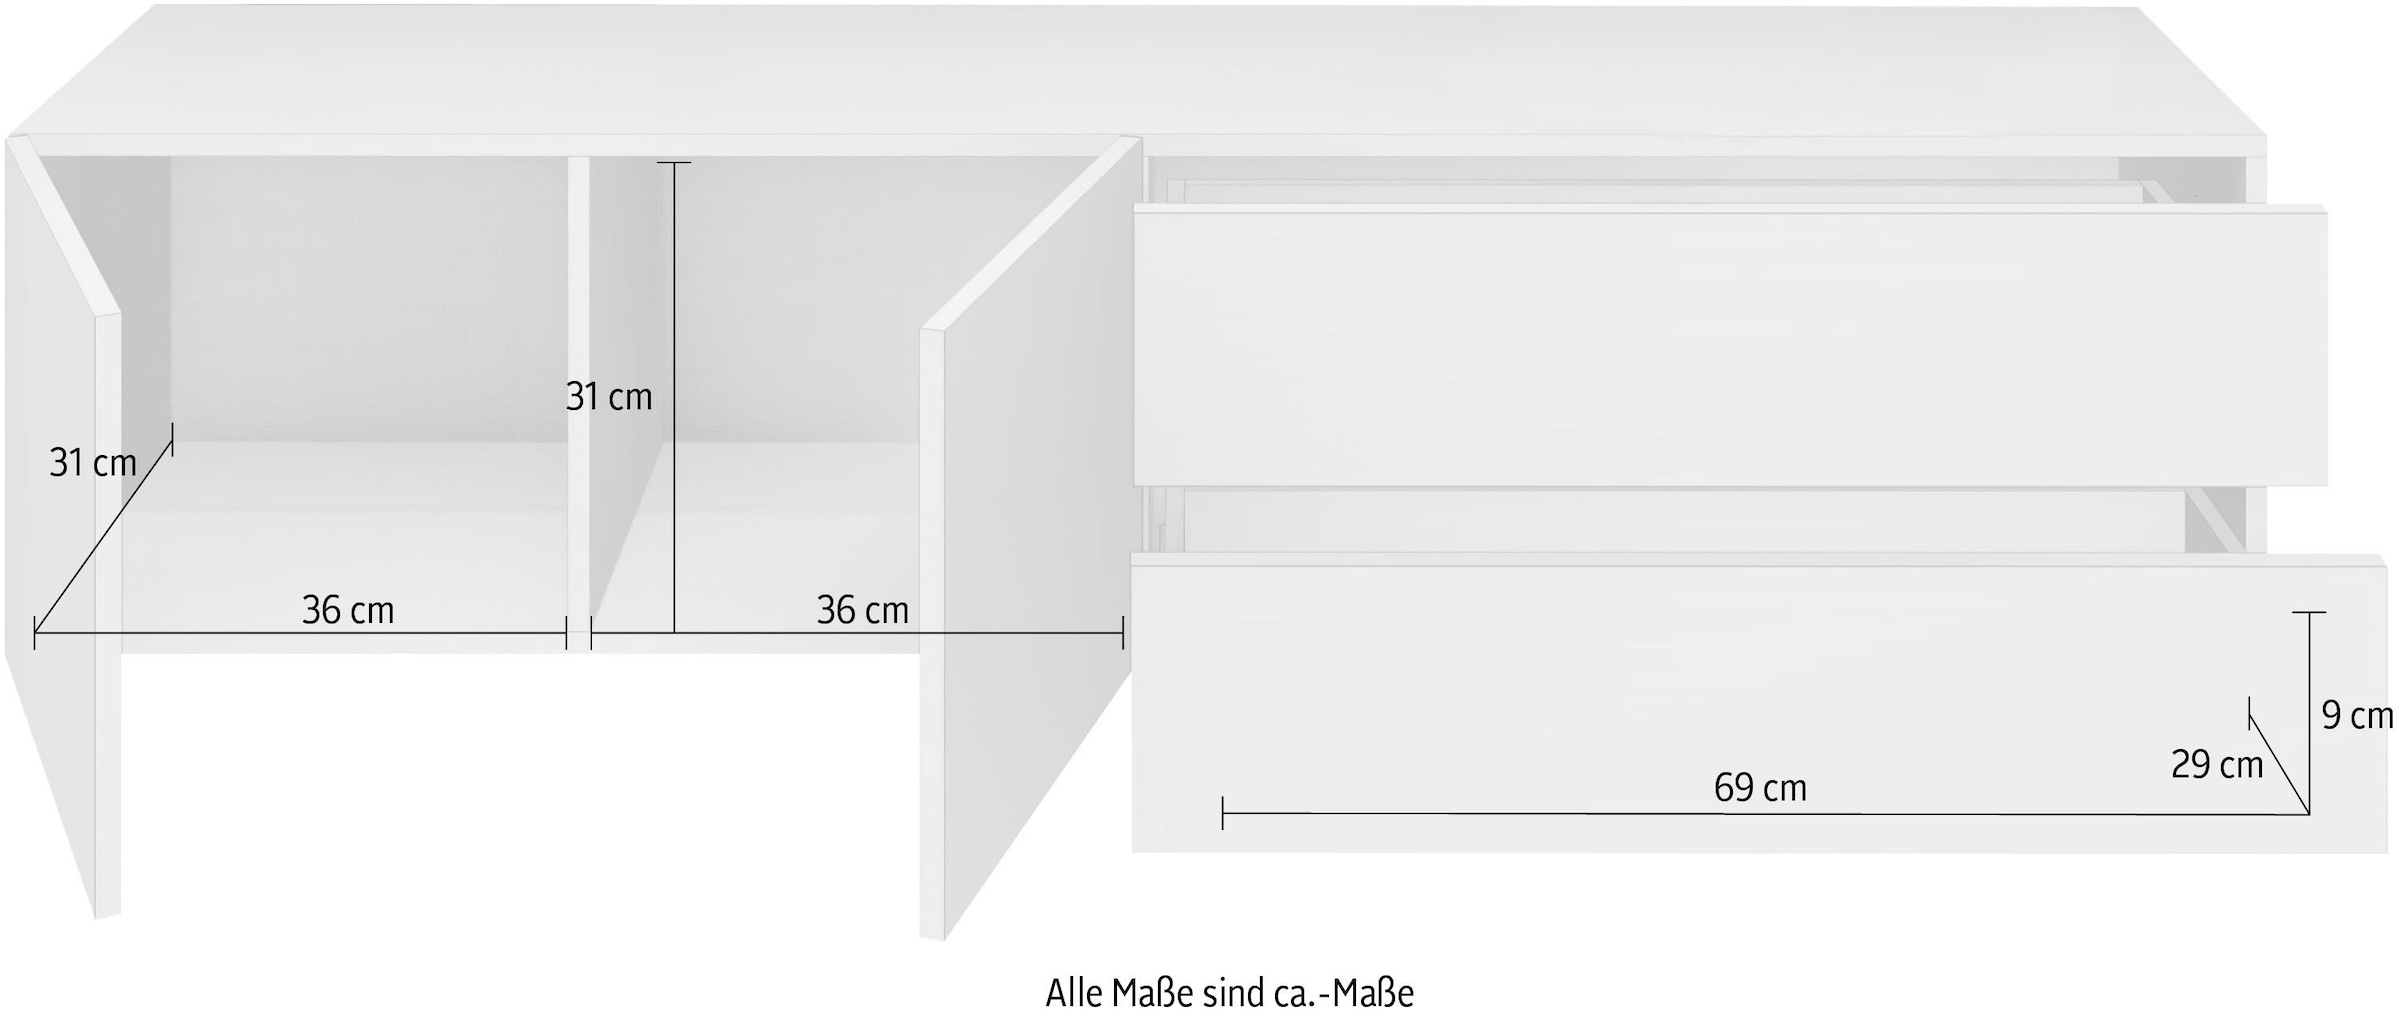 borchardt Möbel Lowboard »Vaasa«, Breite 152 cm, nur hängend kaufen bei OTTO | Garderobenpaneele